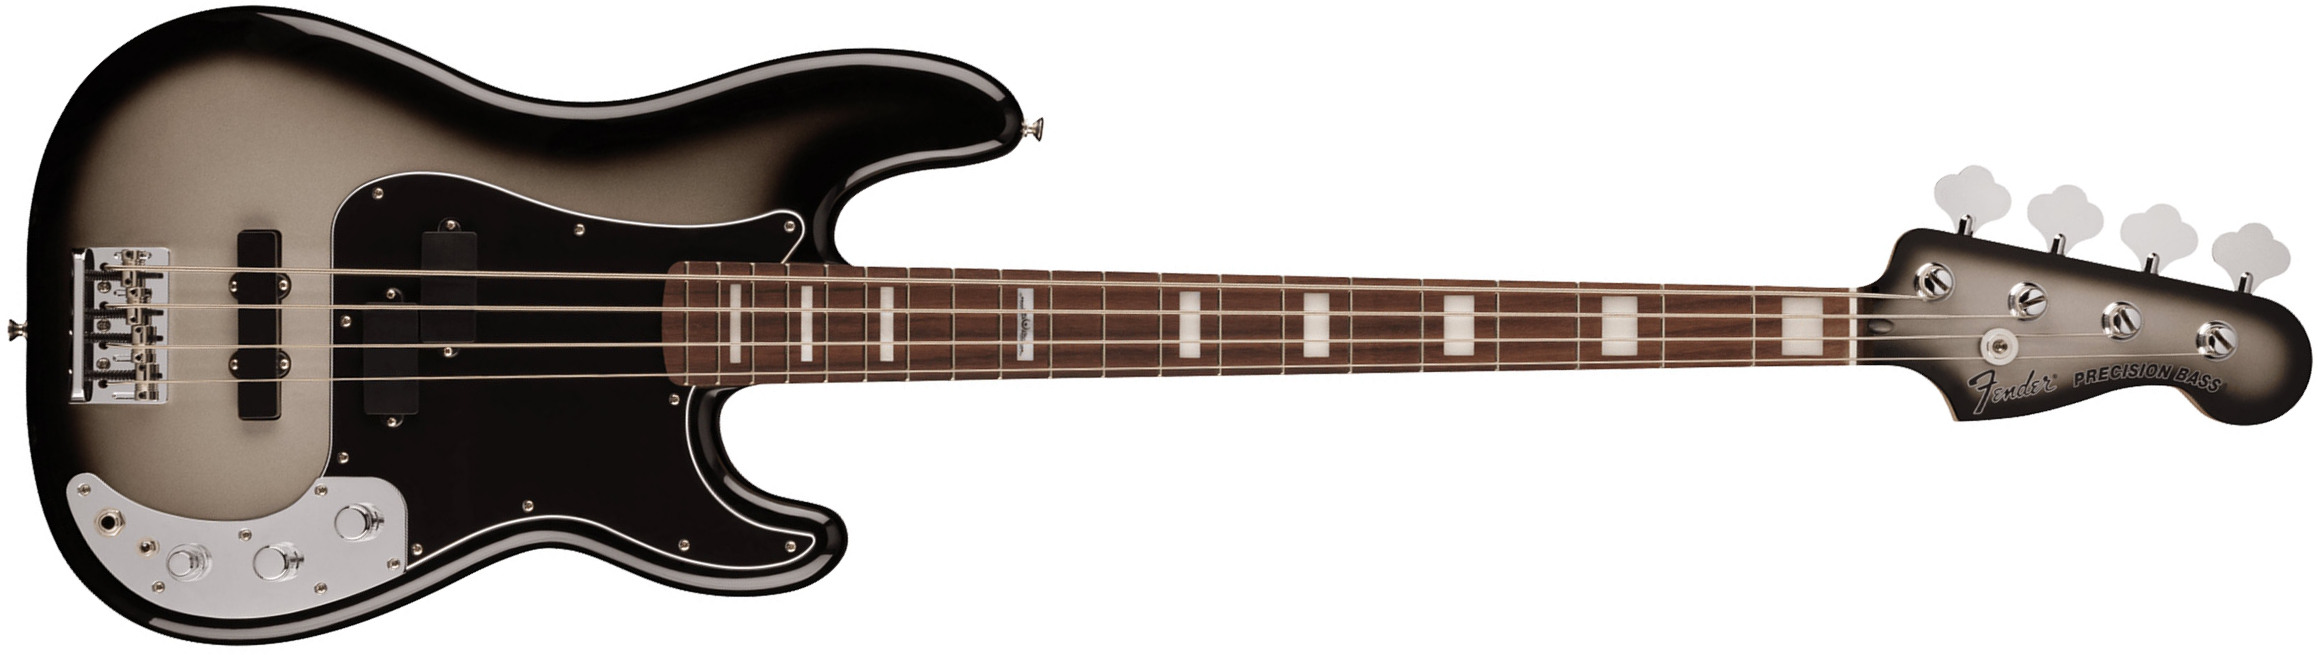 Fender Troy Sanders Precision Bass Signature Active Rw - Silverburst - Basse Électrique Solid Body - Main picture